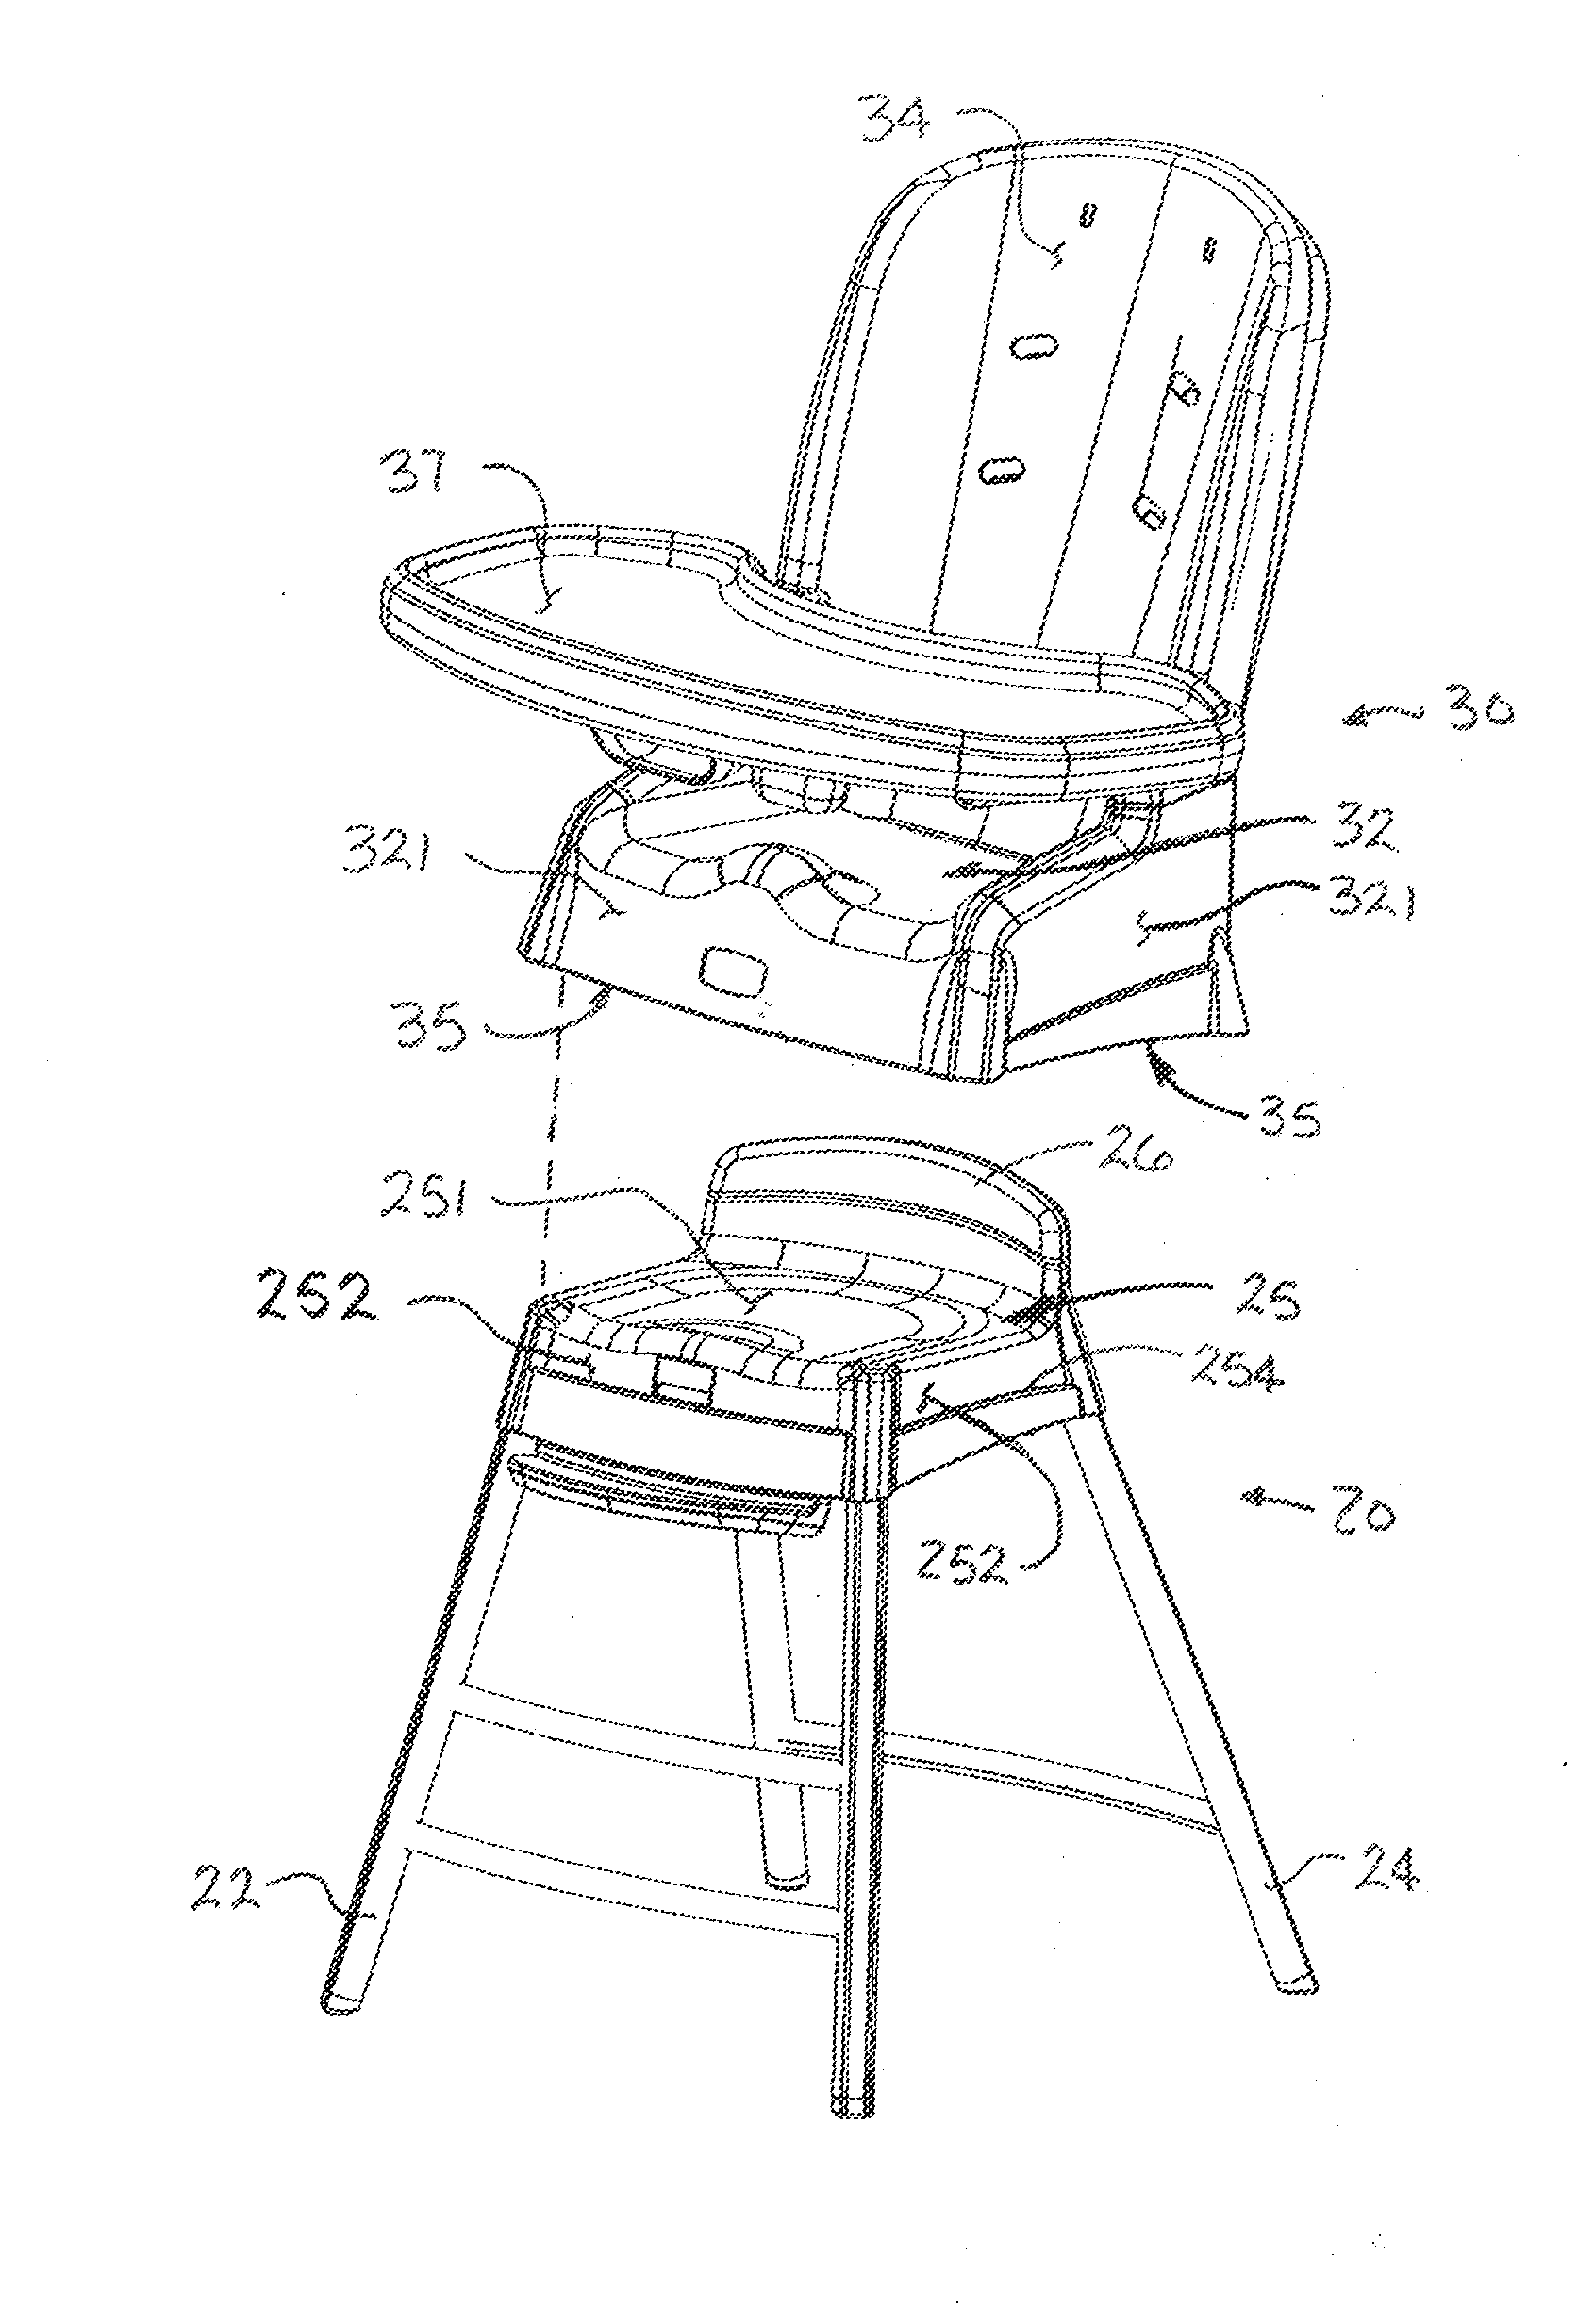 Multi-mode high chair